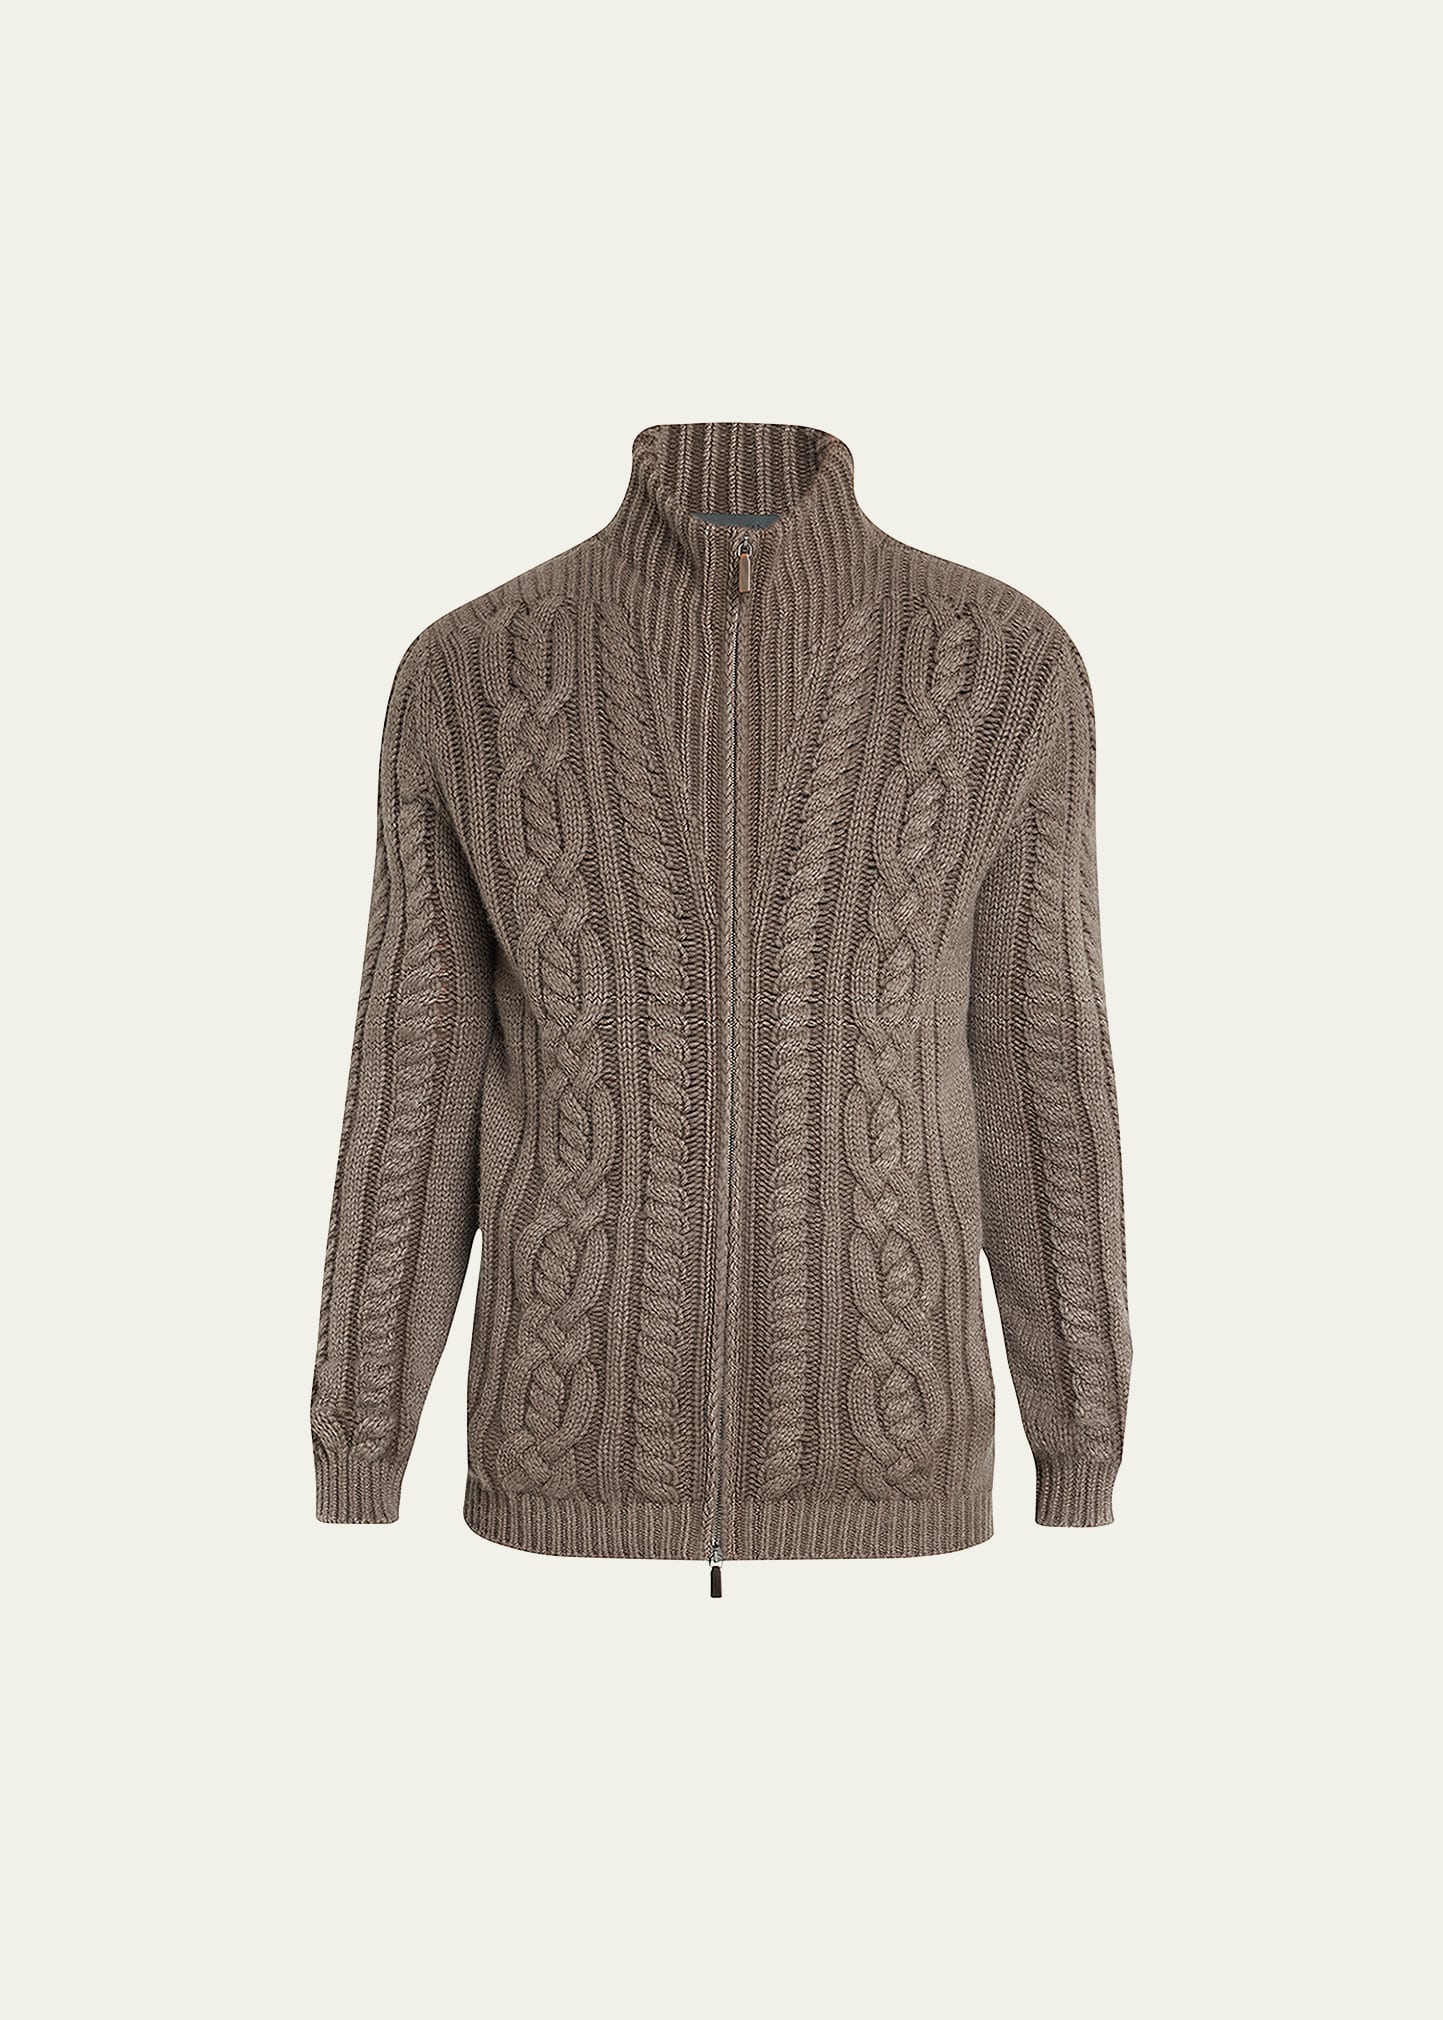 Iris Von Arnim Men's Cable-Knit Zip Sweater